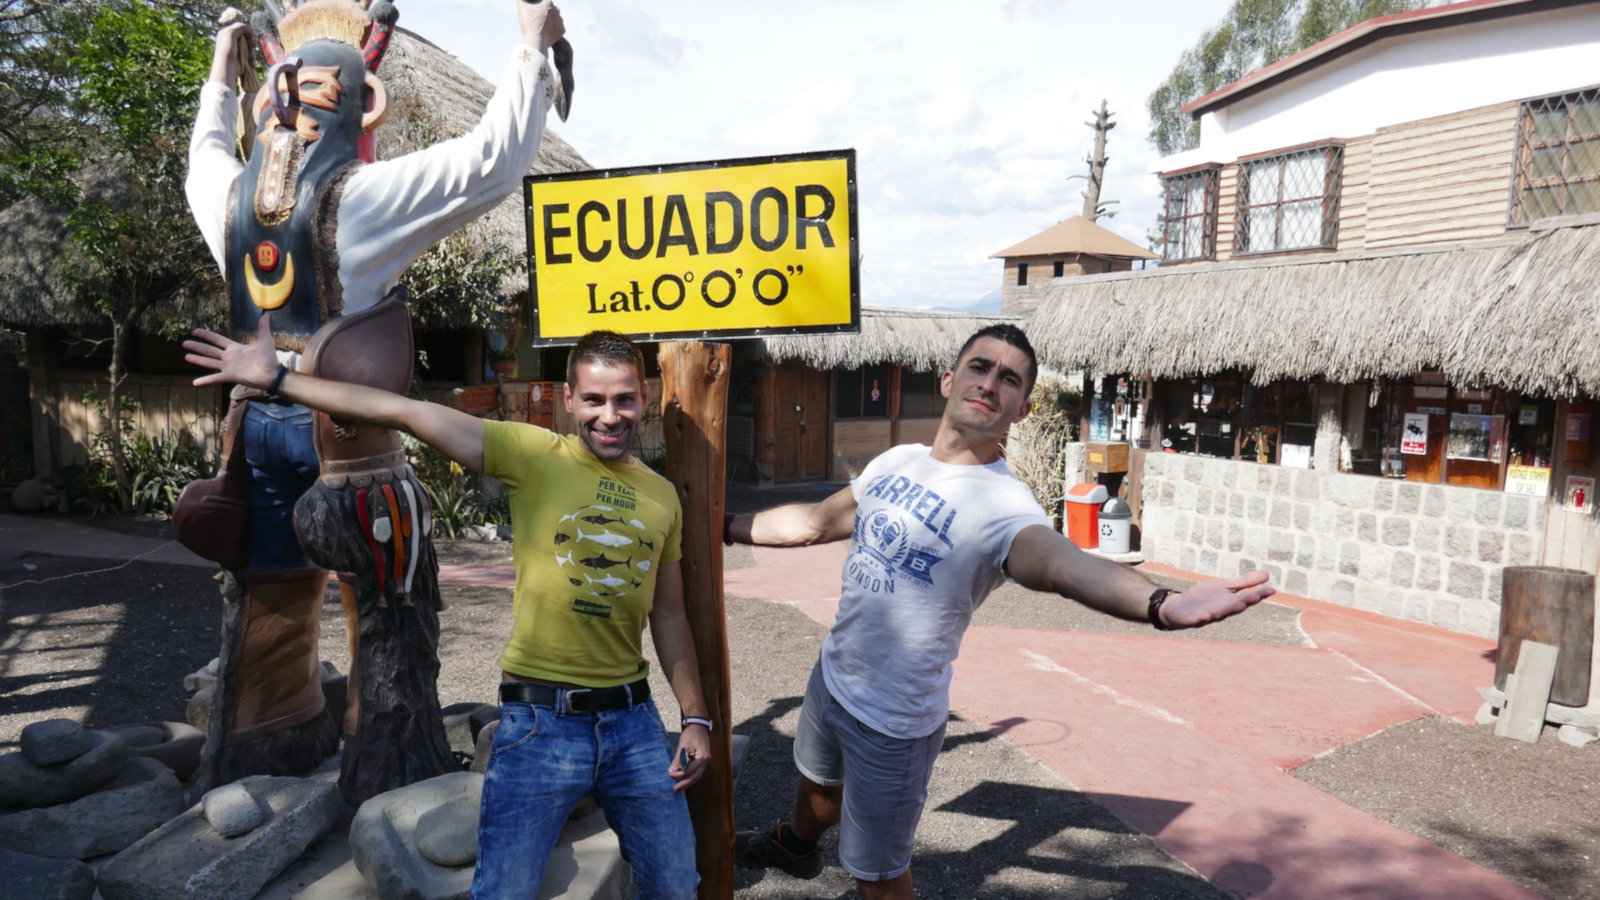 O Equador foi batizado em homenagem à linha do Equador que passa por ele, que você pode visitar